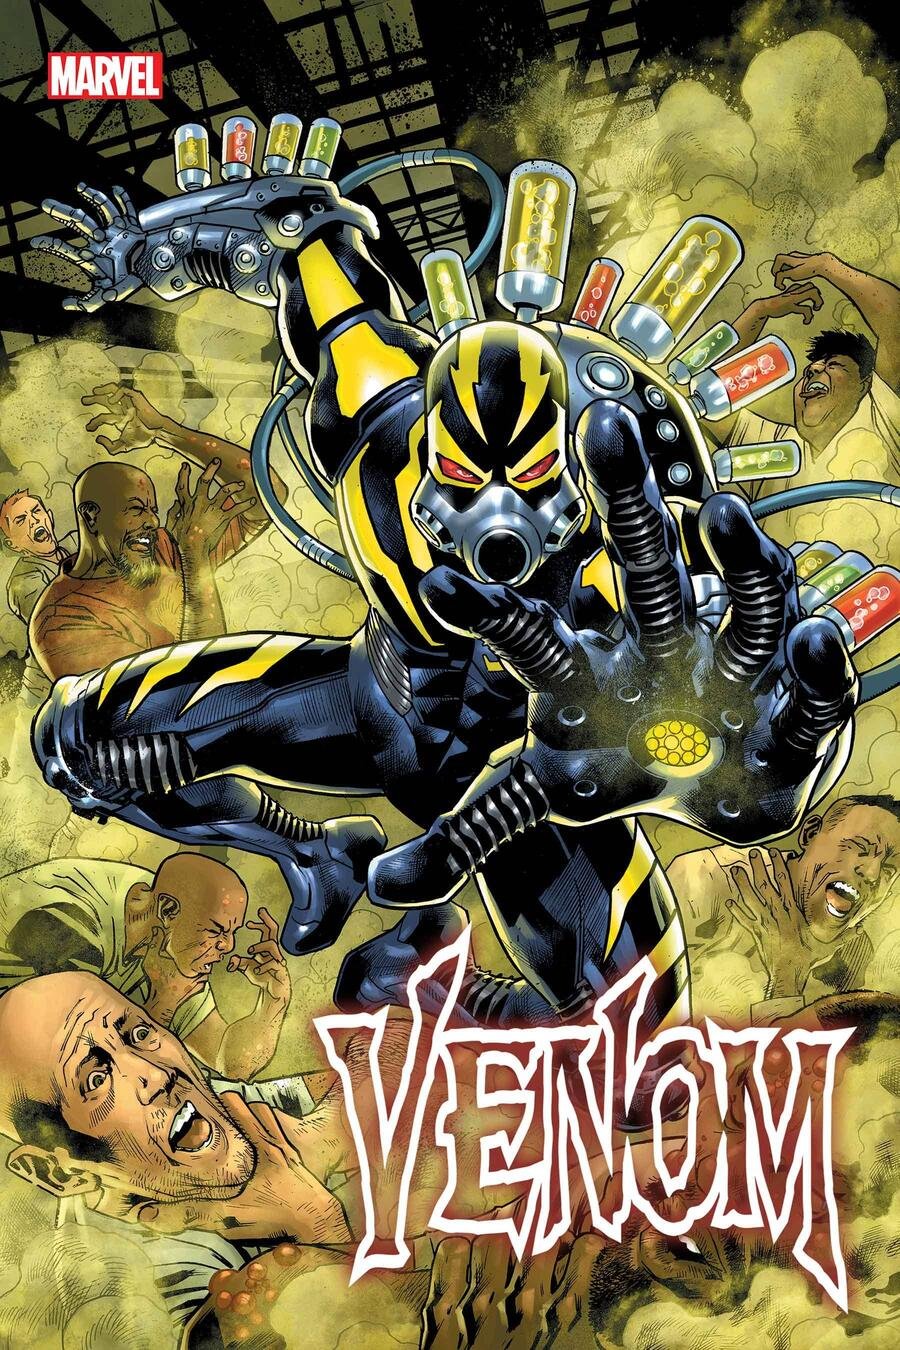 Cover di Venom 11 di Bryan Hitch, primo numero di Venomworld con l'esordio di Sleeper Agent